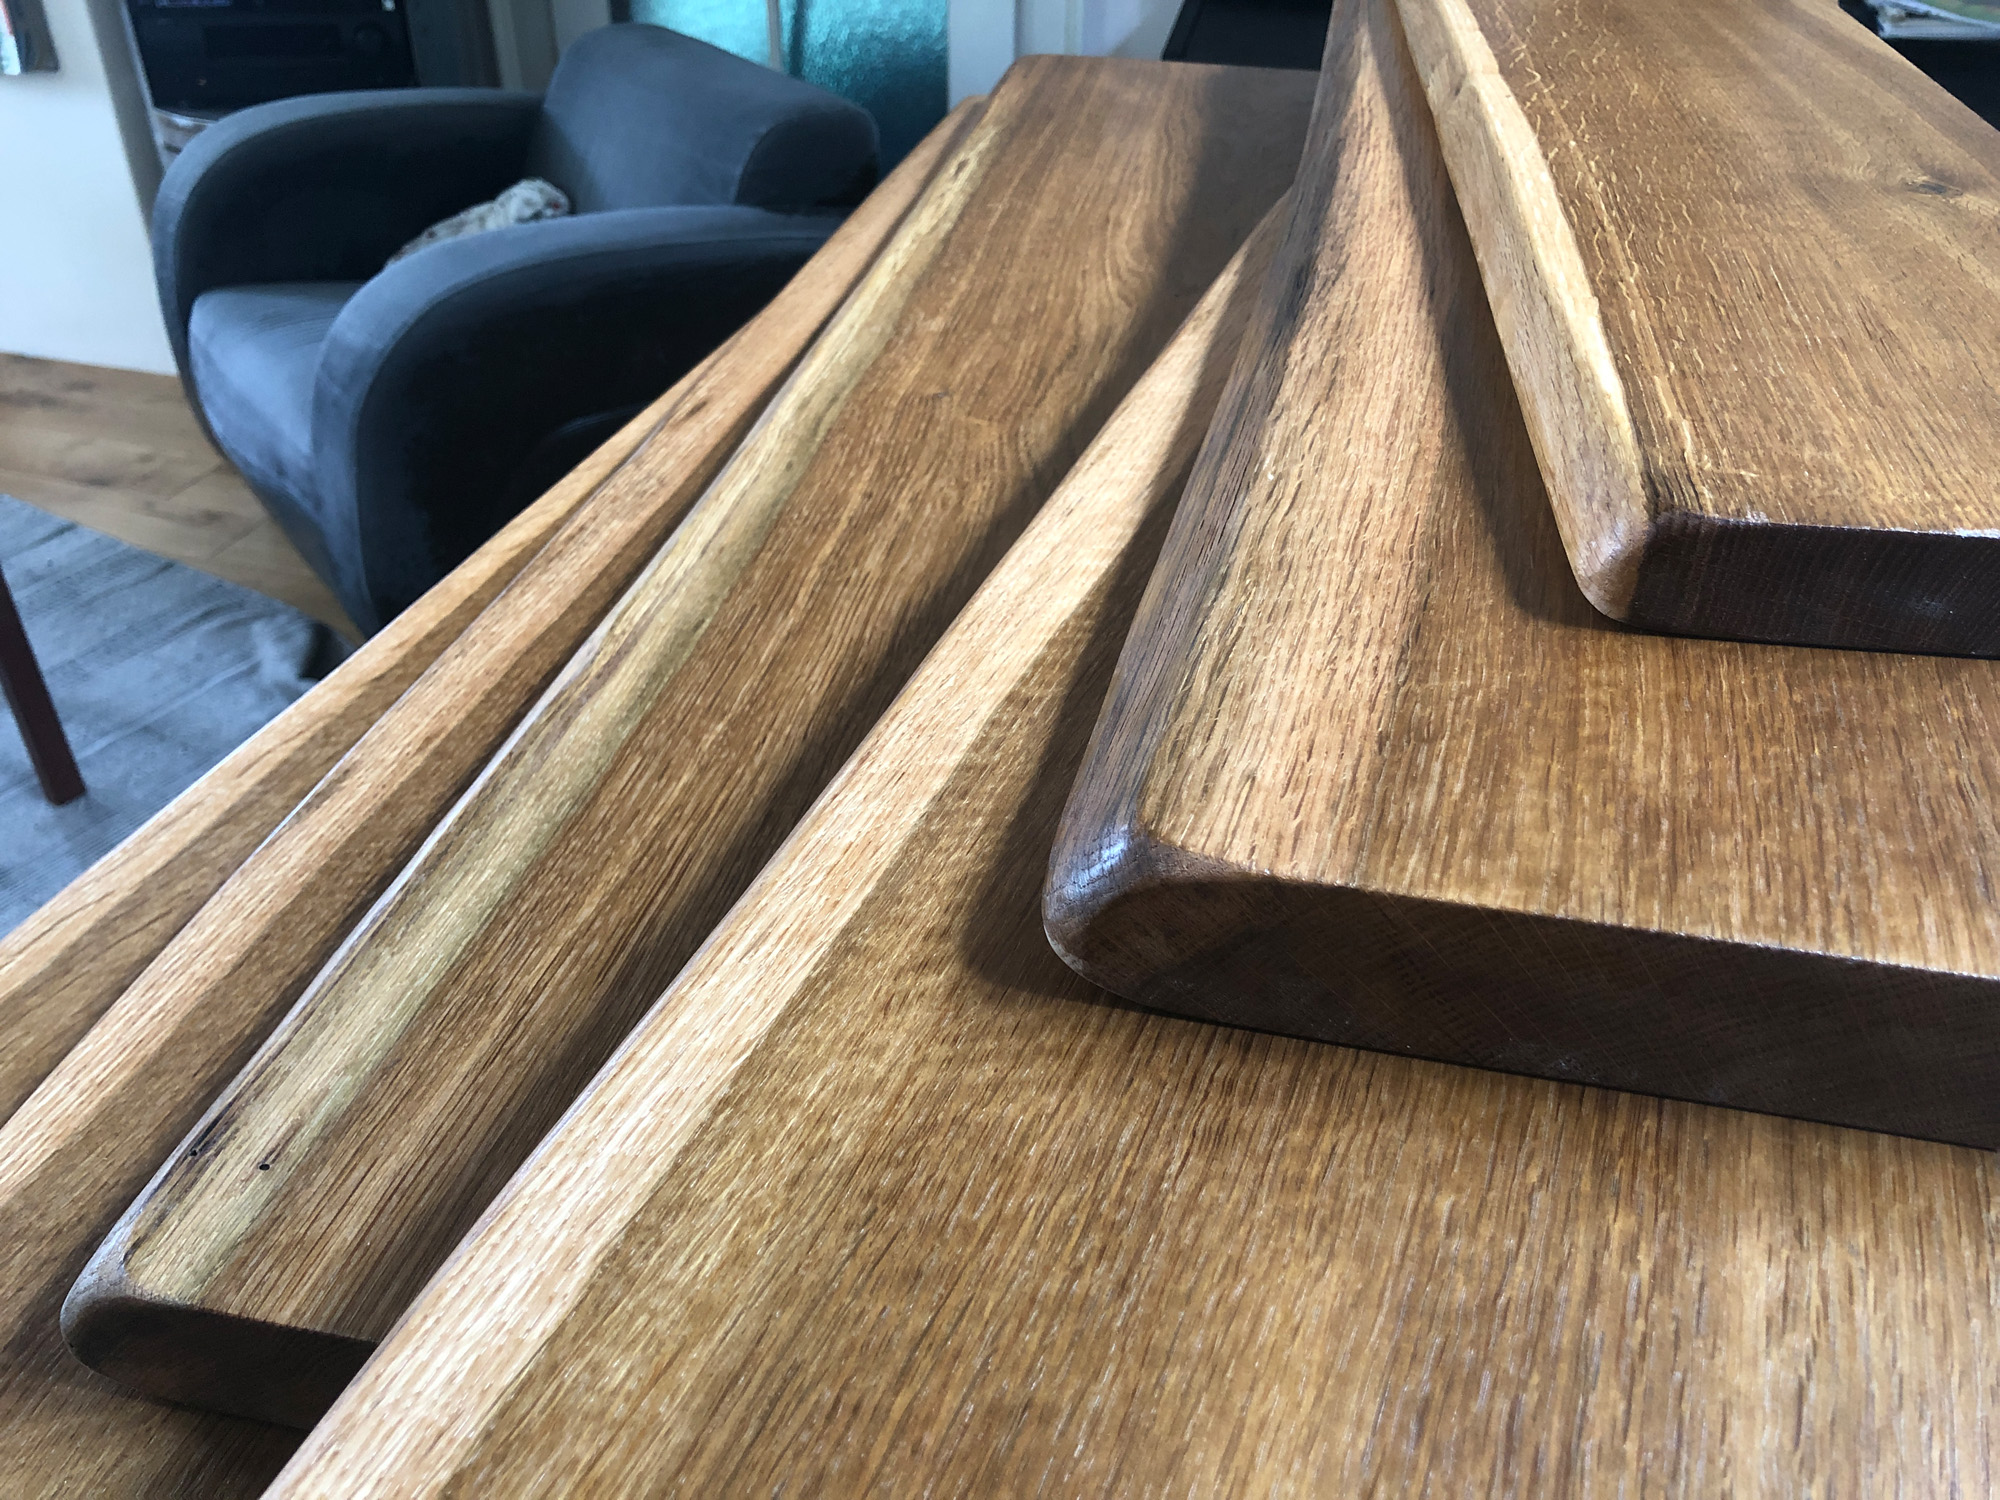 Bemessung der minimalen Tiefe bei der Anfertigung von Holzfensterbänken oder Tischplatten mit Naturkante